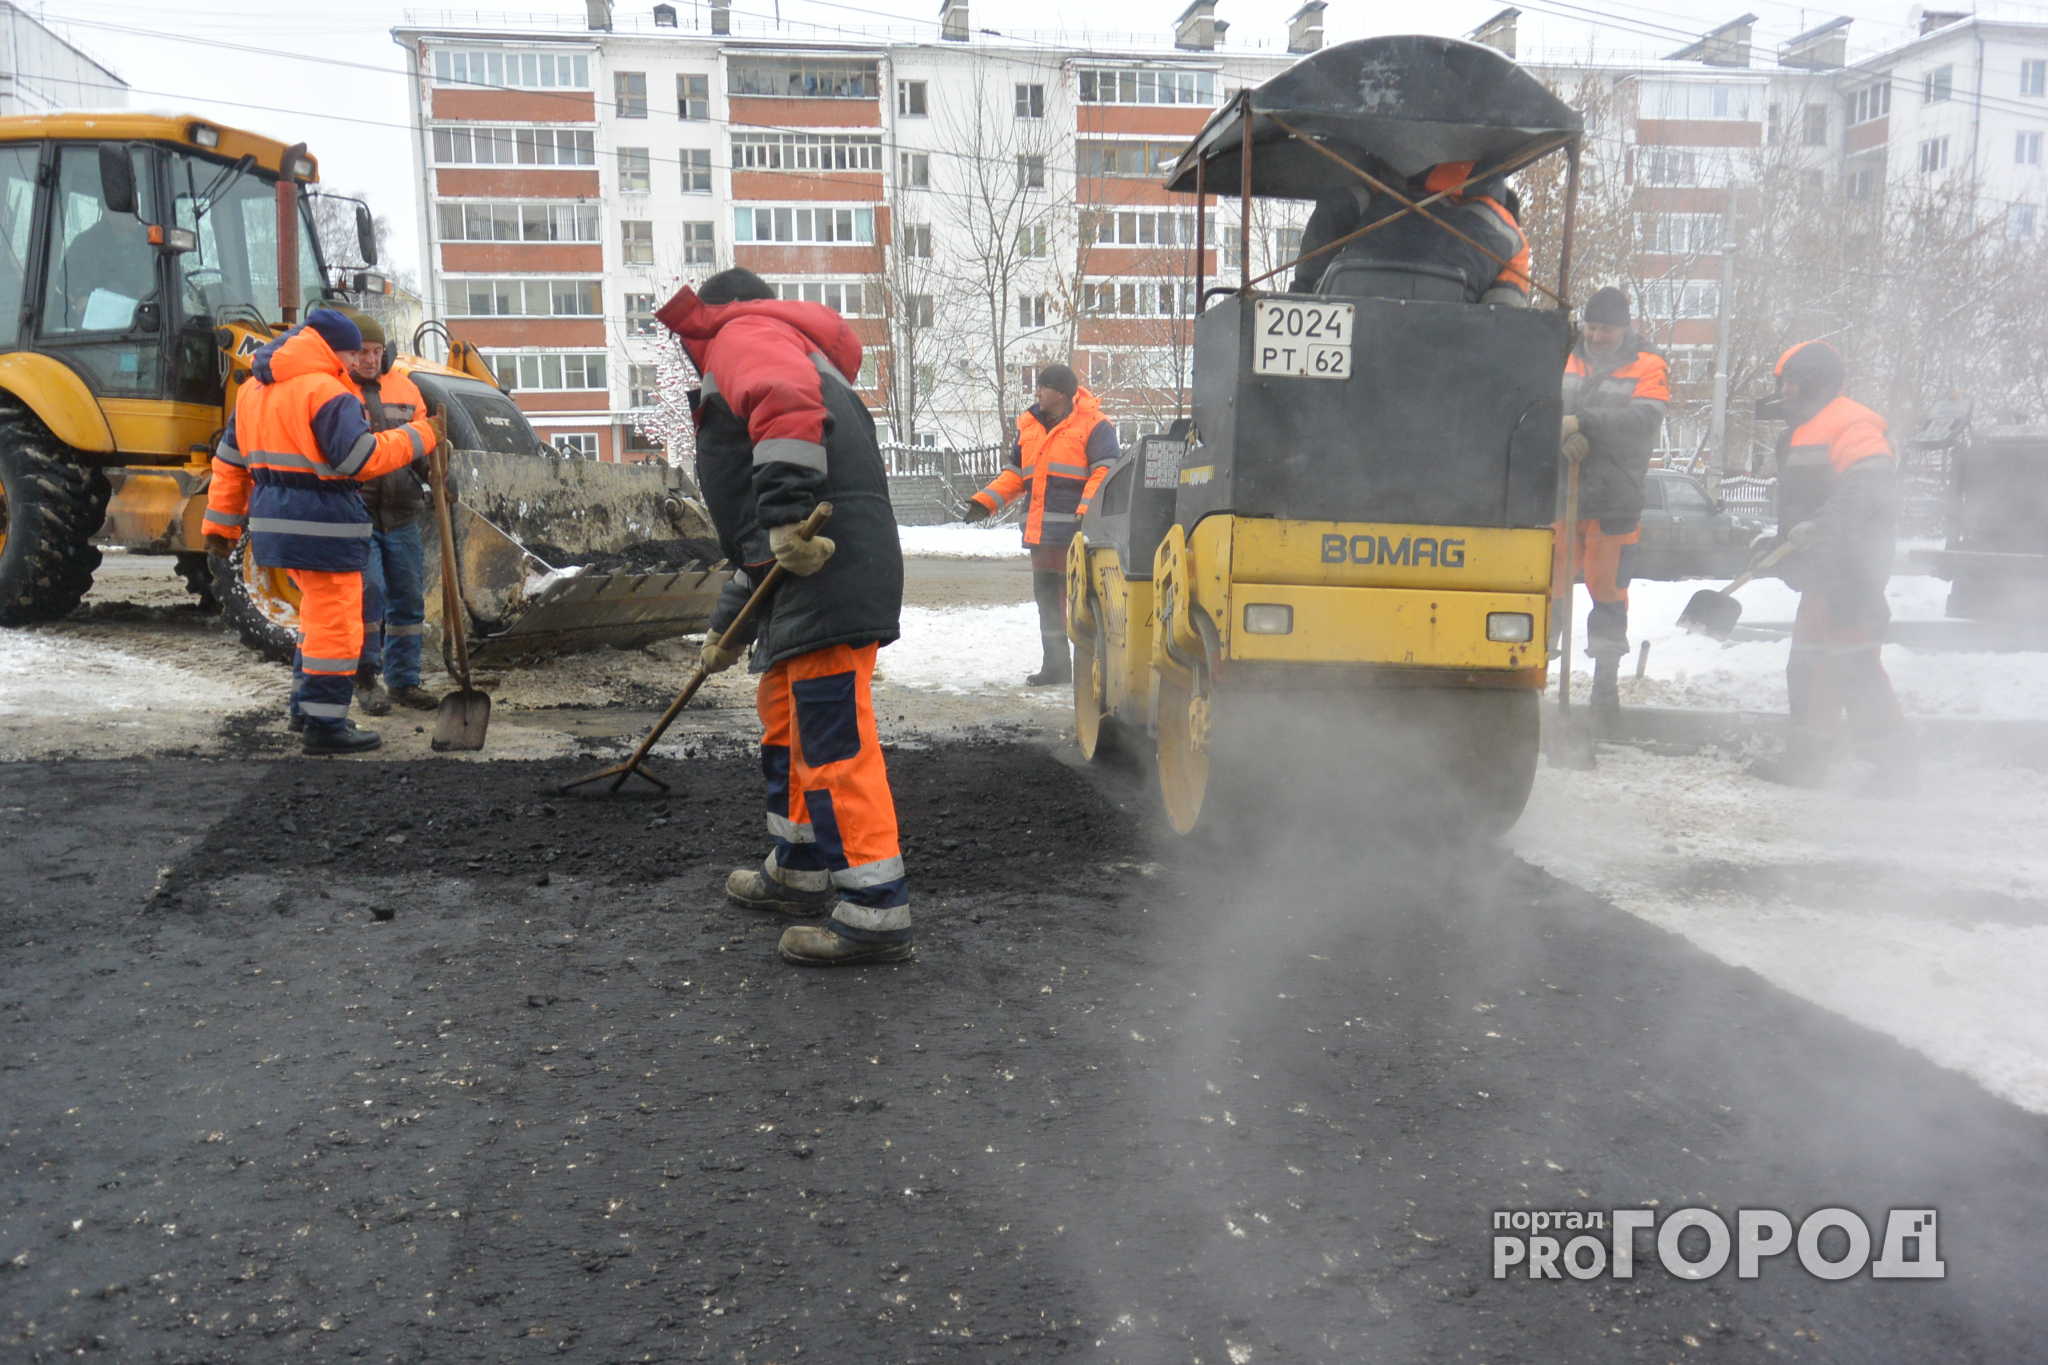 В Рязани снова замечены работники, укладывающие асфальт во время снегопада